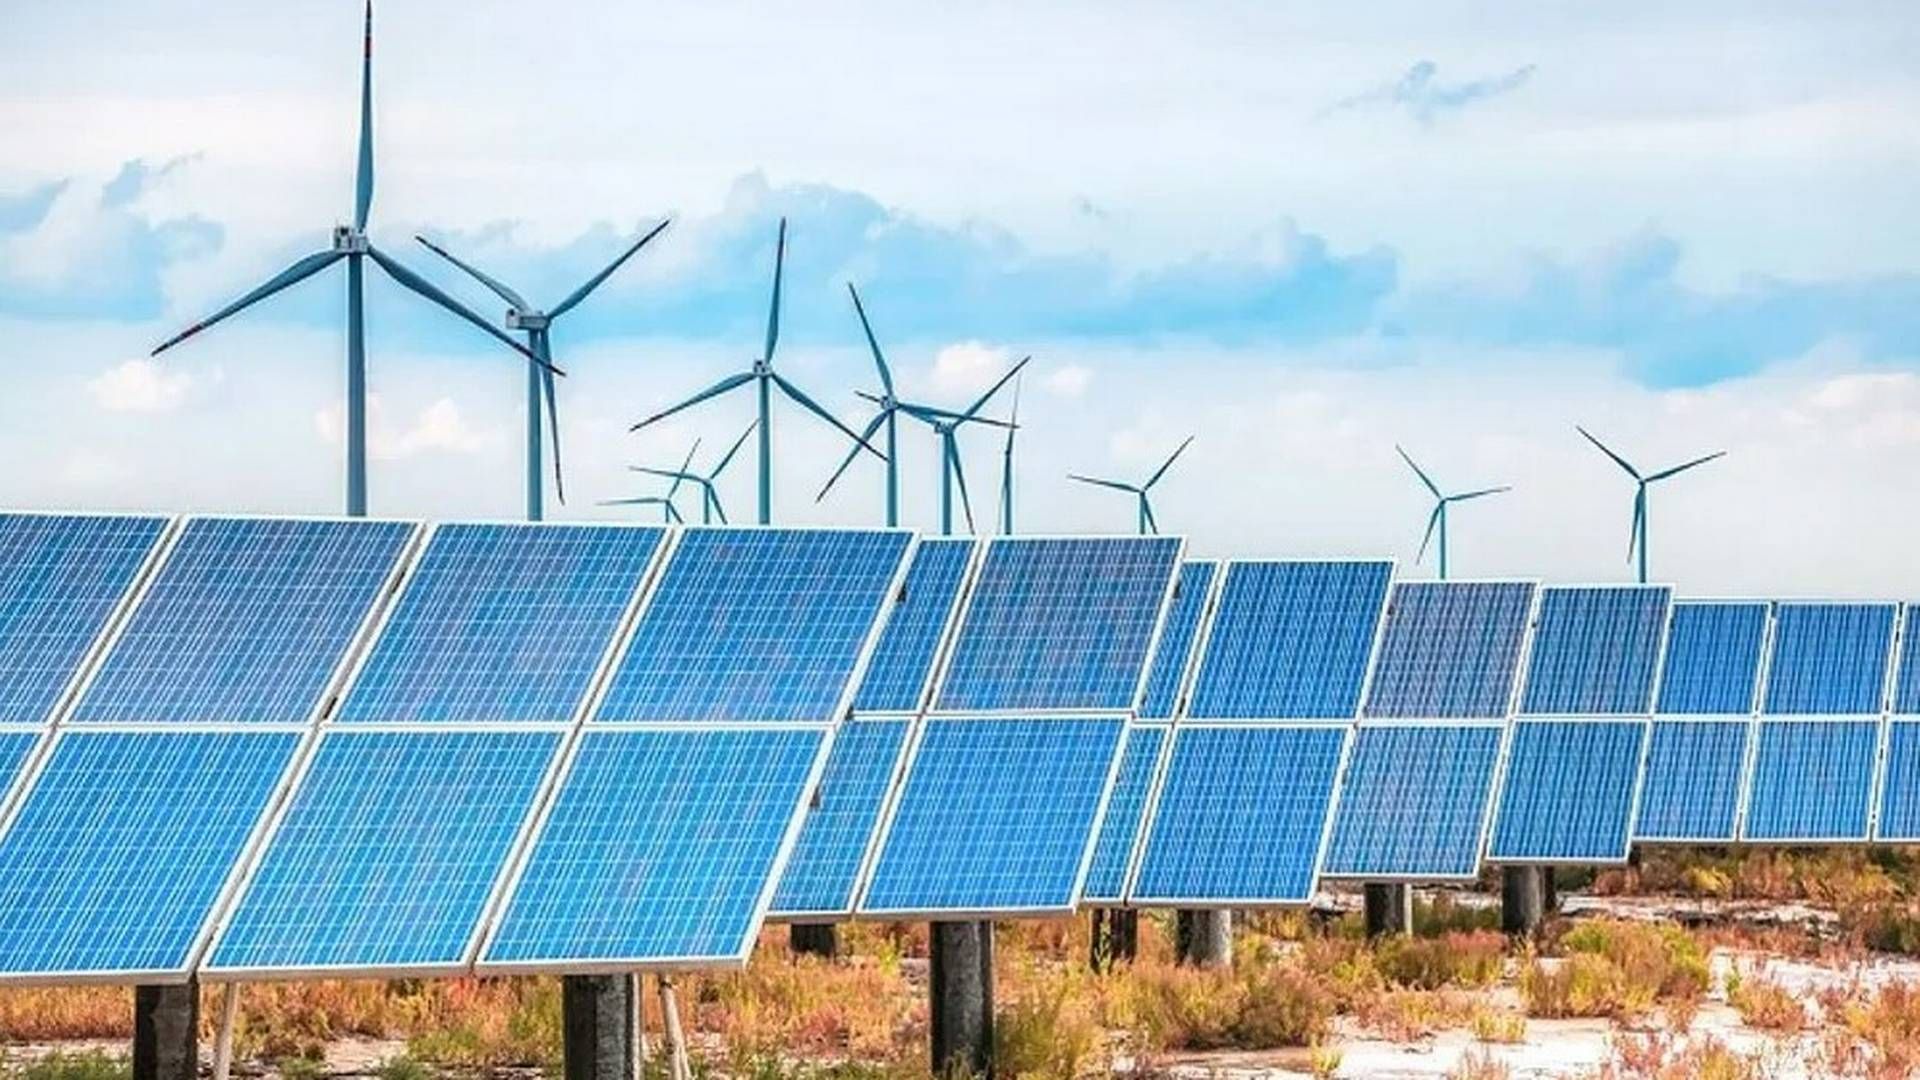 Ember sier 2022 vil bli husket som et vendepunkt i verdens overgang til ren kraft. Illustrasjonsbilde. | Foto: Kennedy Energy Park